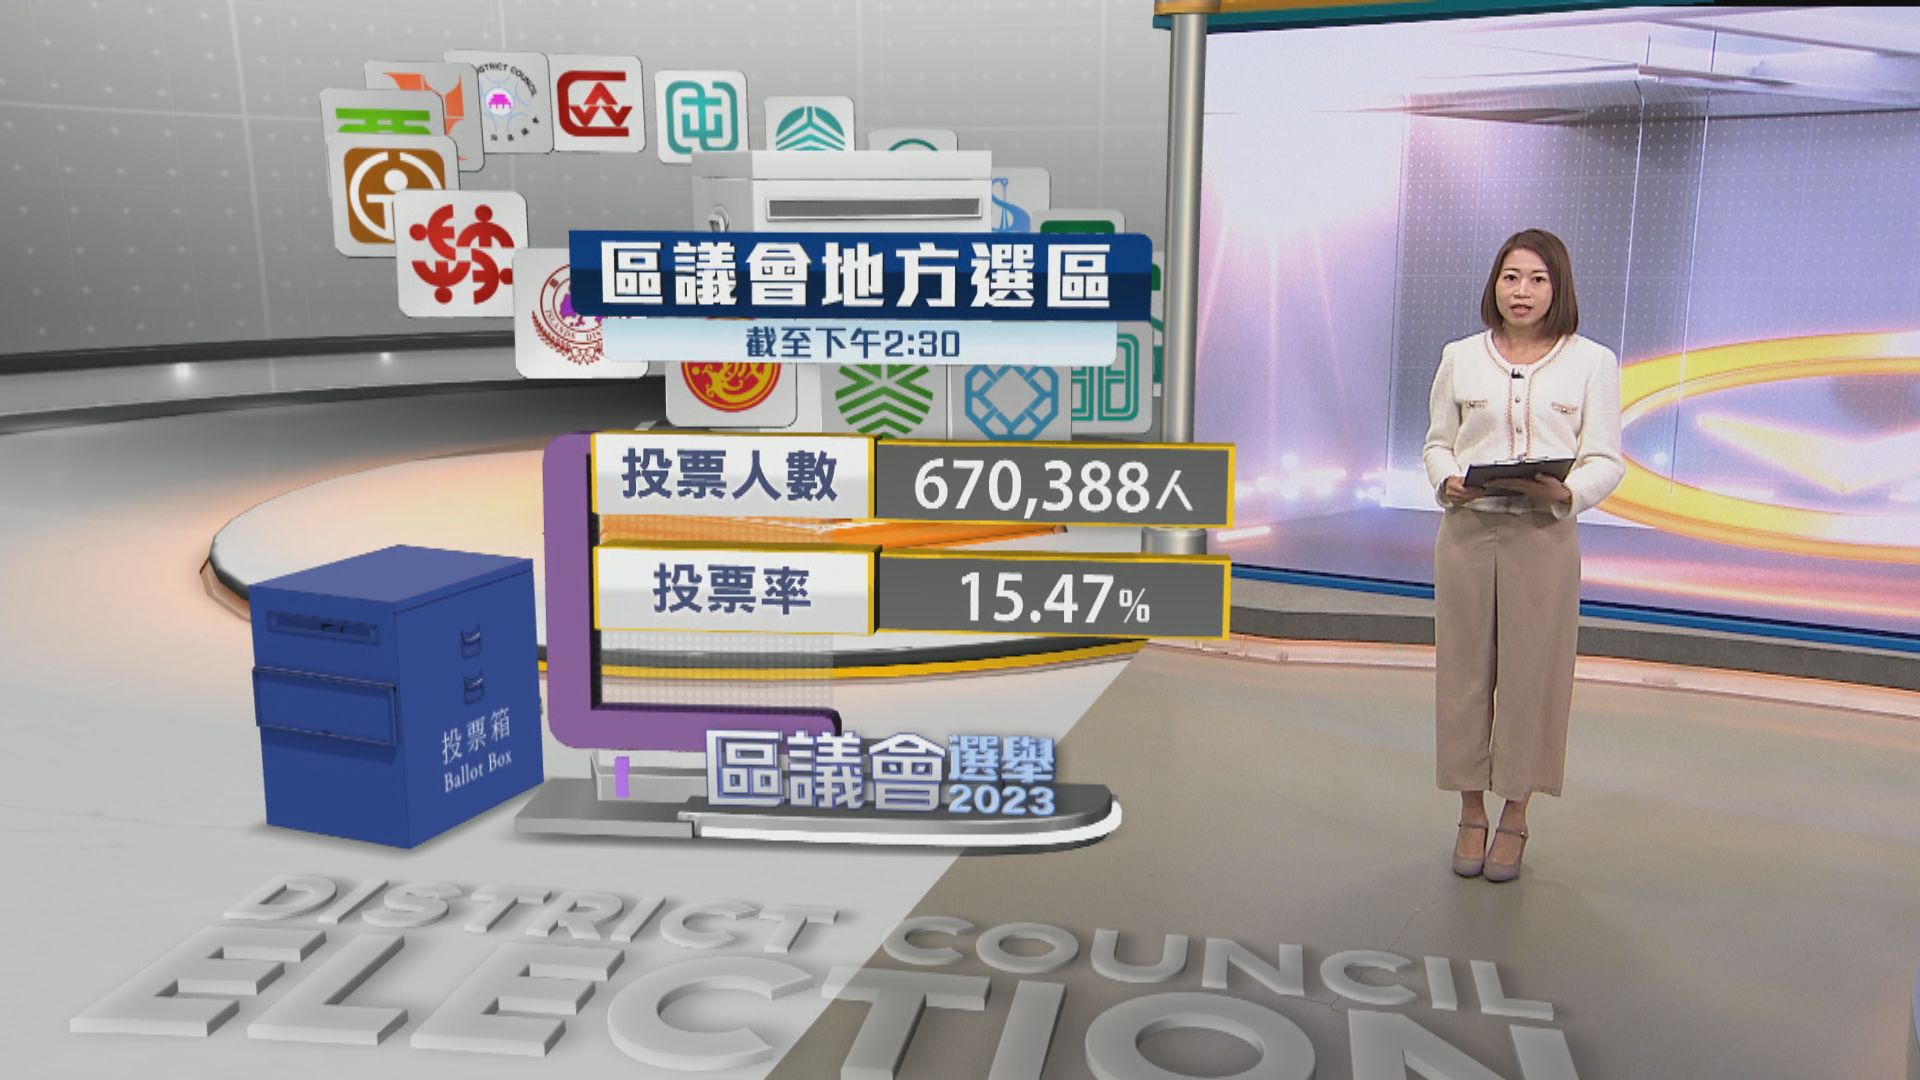 【區議會選舉】截至下午兩時半 有逾67萬人投票 投票率為15.47%